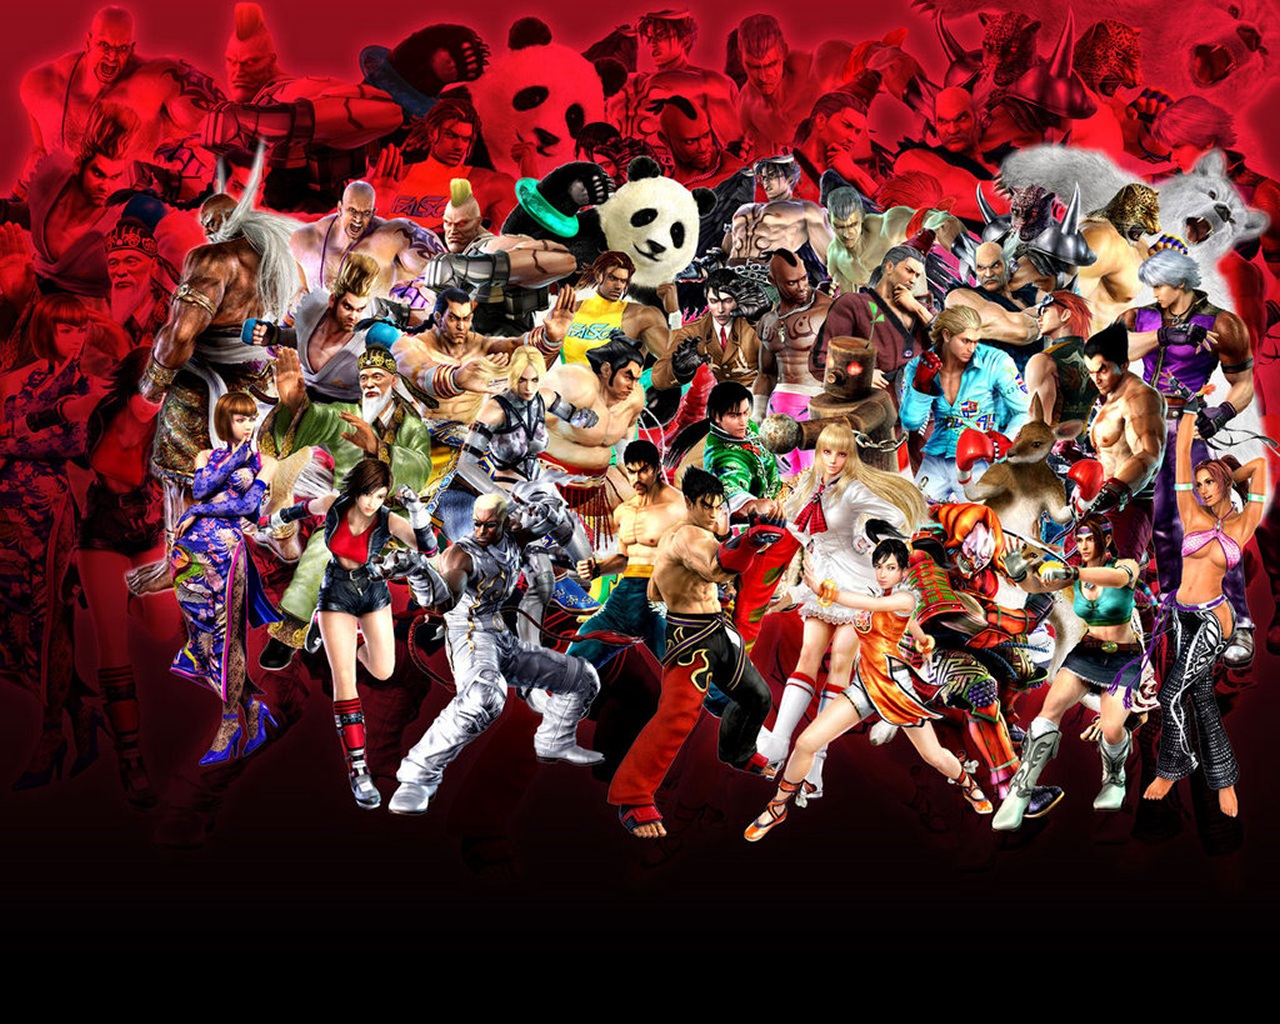 "Tekken" desktop wallpaper (1280 x 1024 pixels)